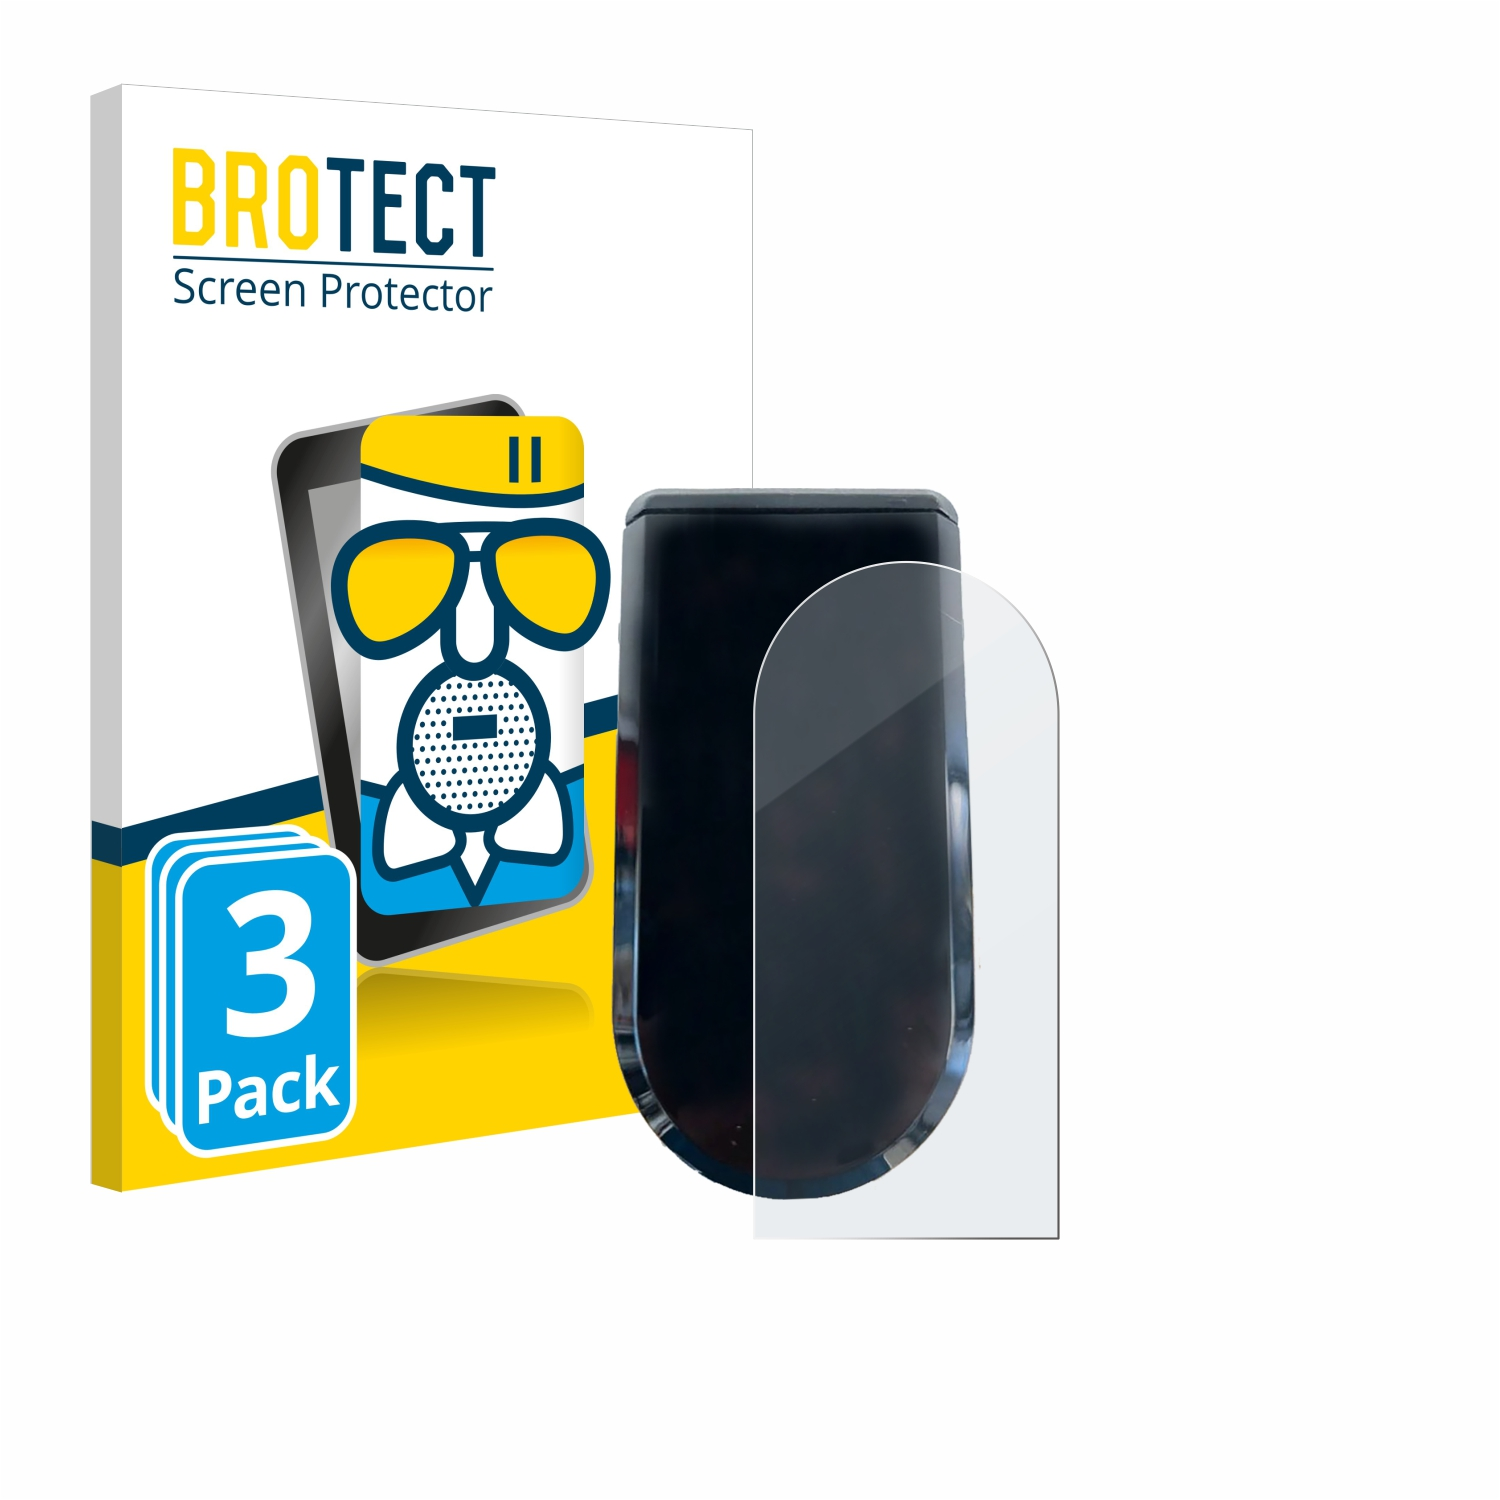 Pro) matte 3x BROTECT Egret Airglass Schutzfolie(für